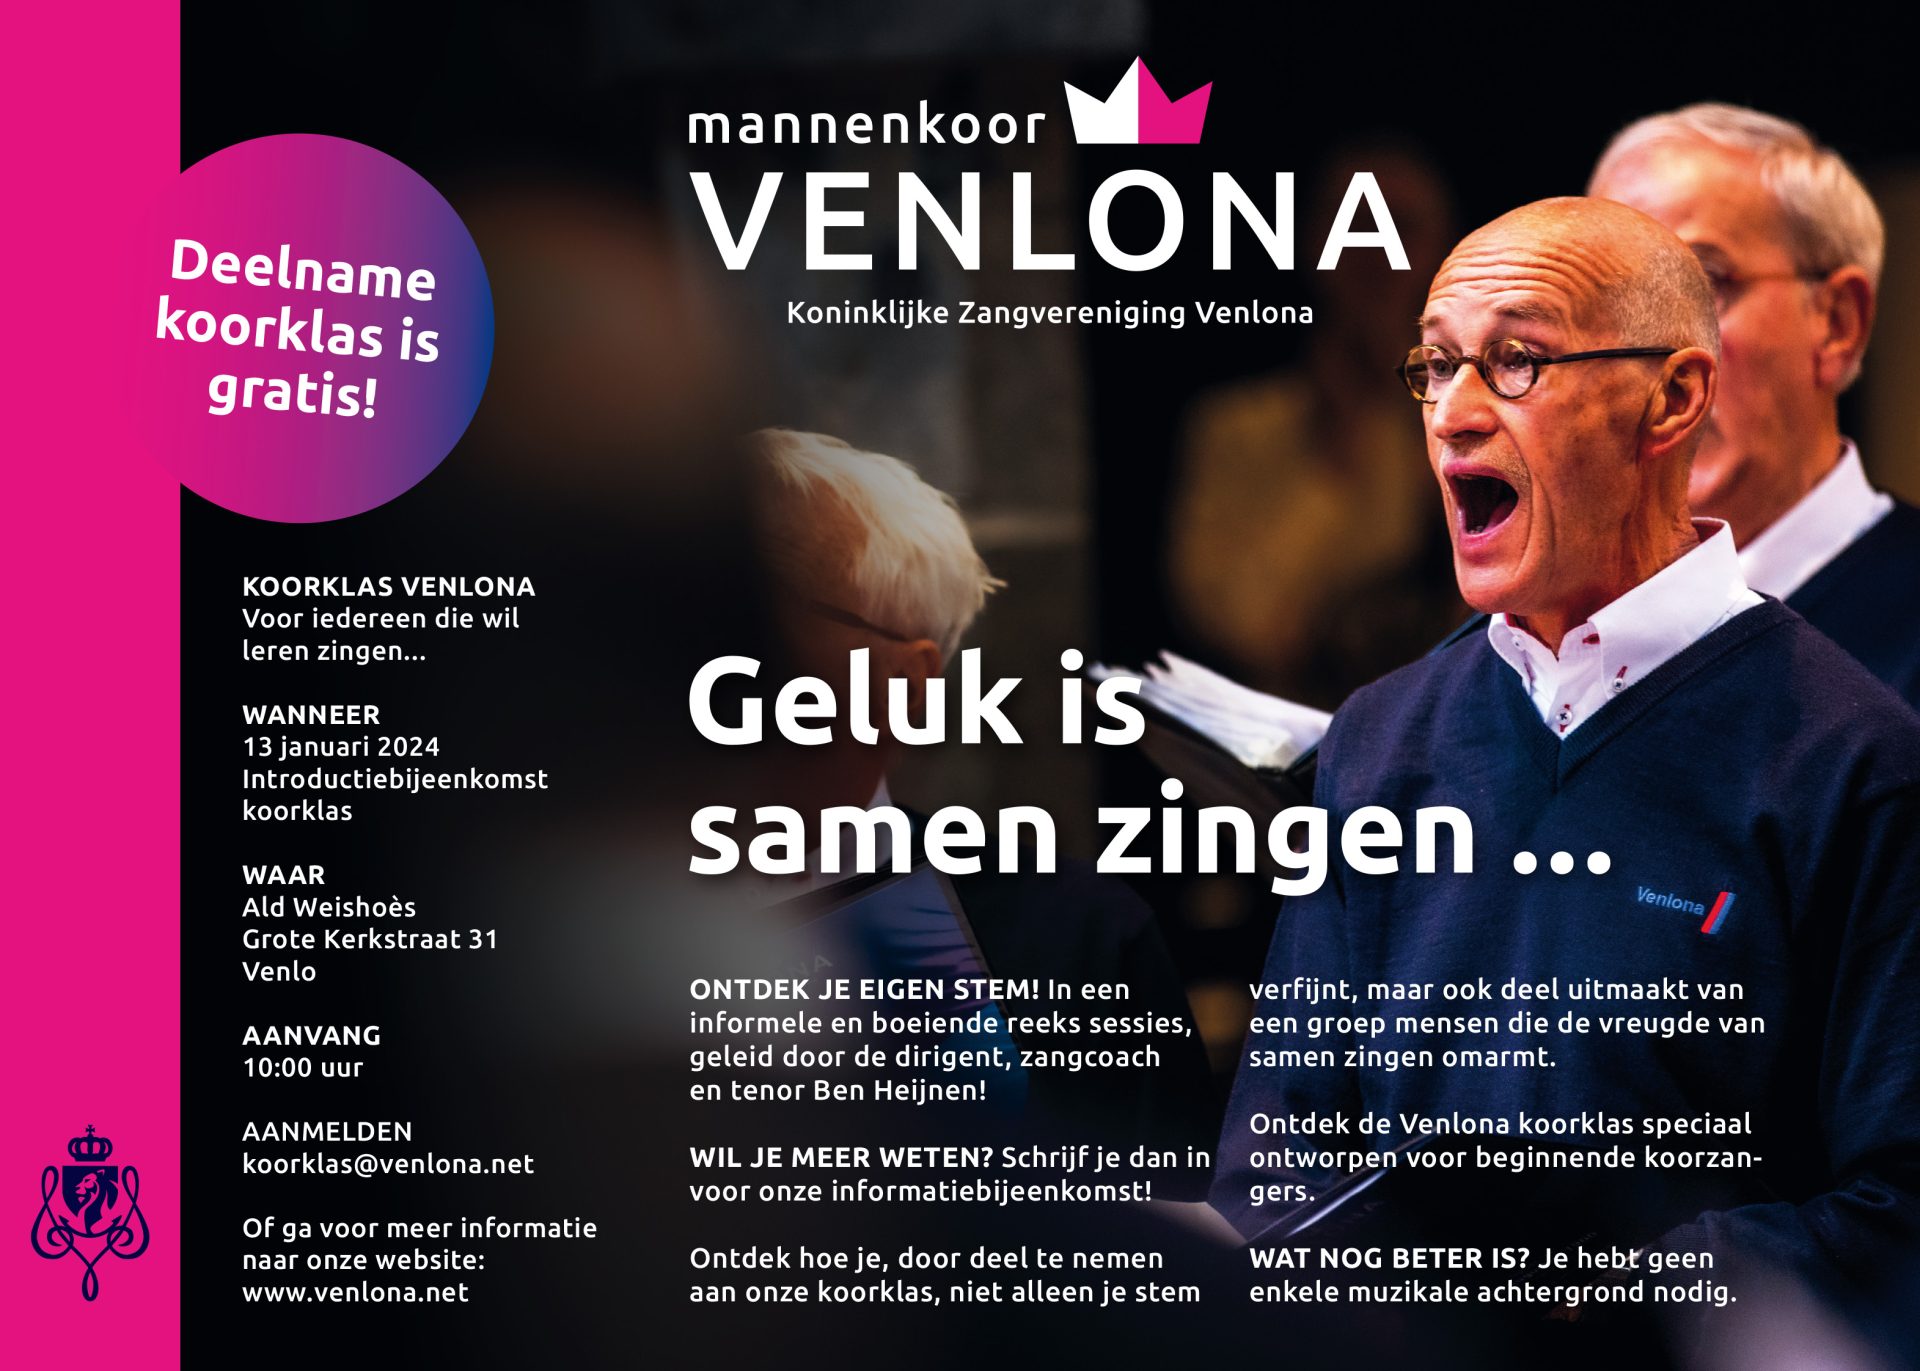 De advertentie die Mannenkoor Venlona publiceerde in de VIA Venlo.